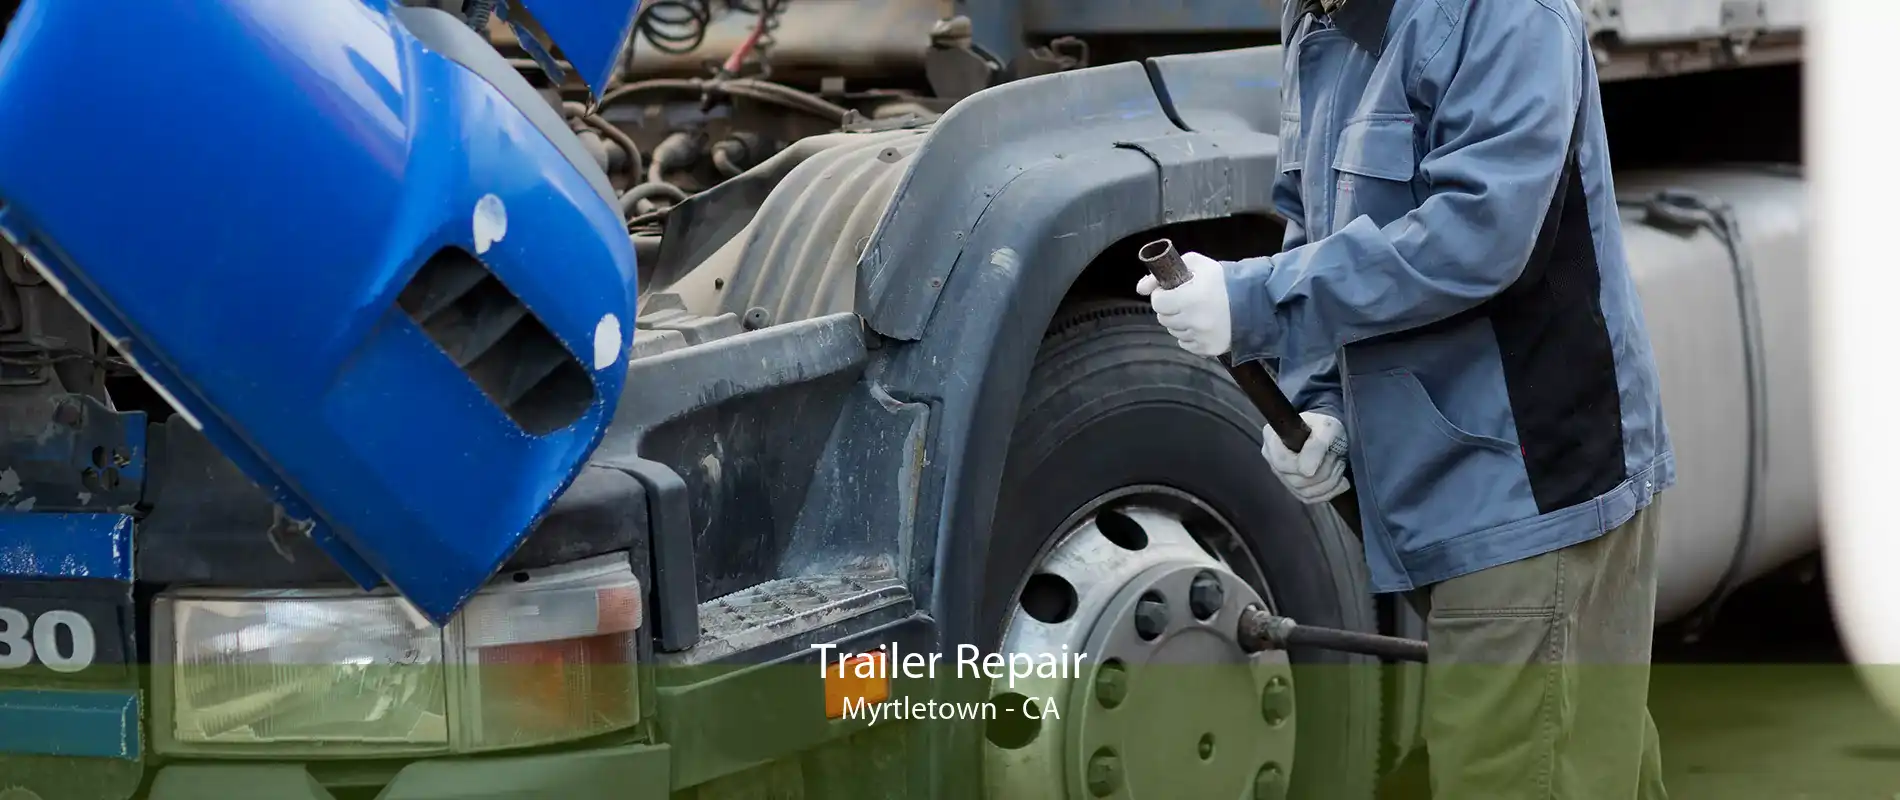 Trailer Repair Myrtletown - CA